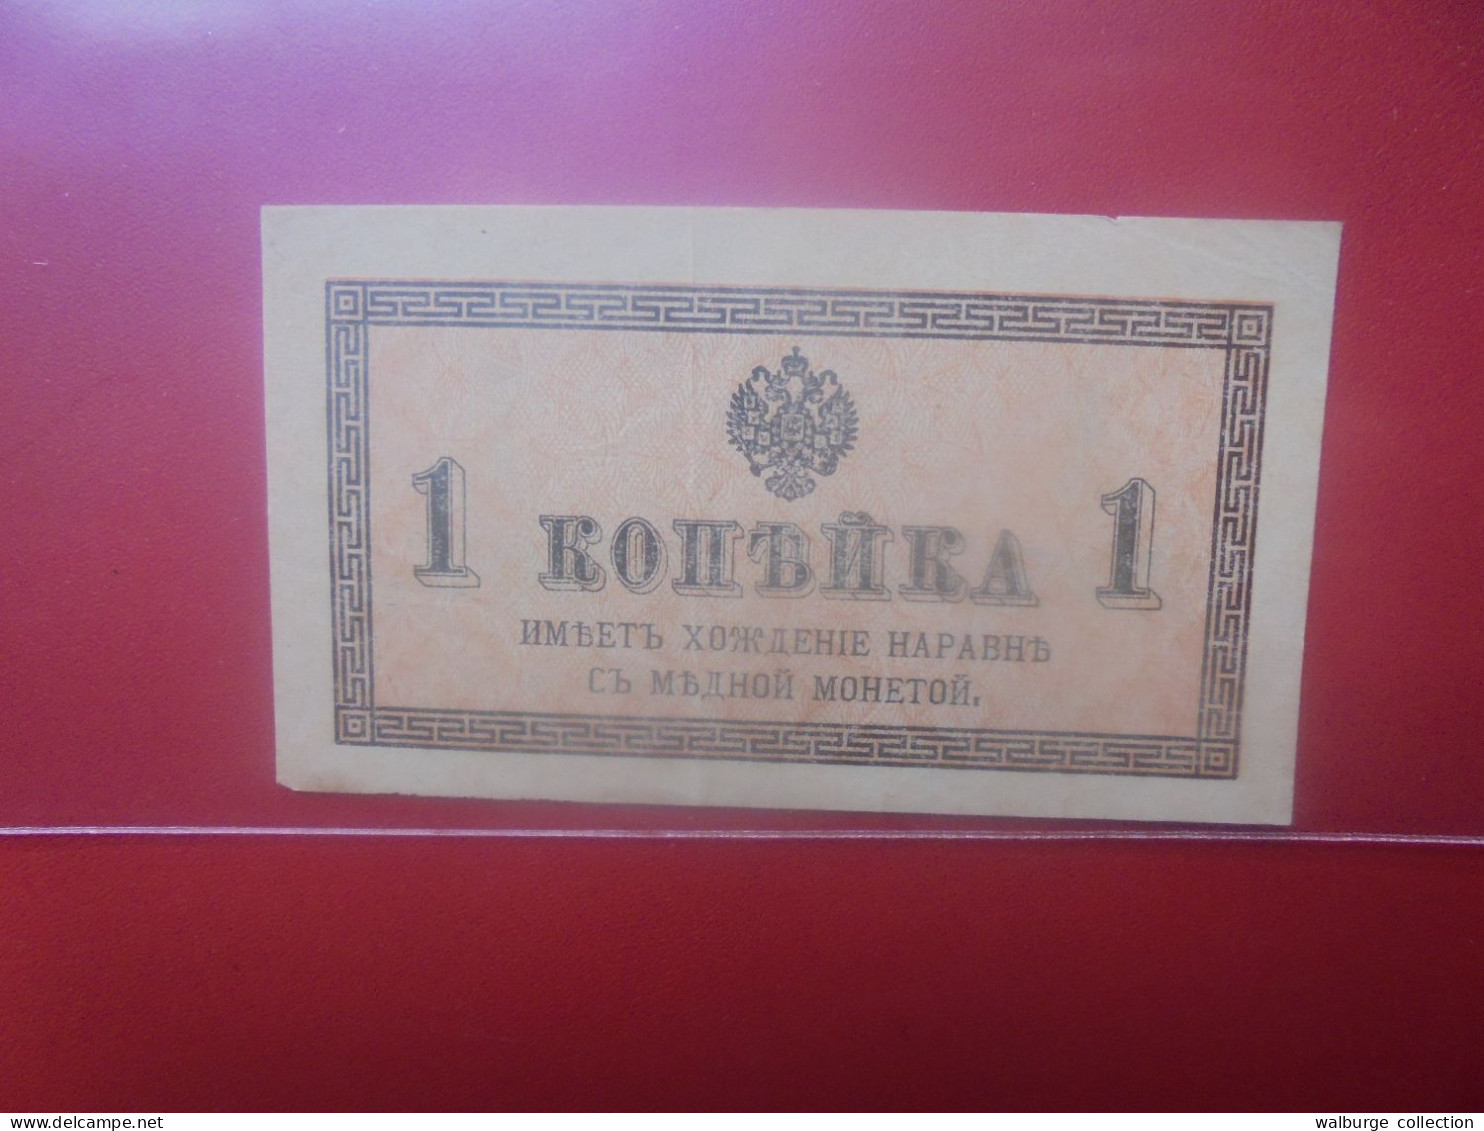 RUSSIE 1 KOPEK ND (1915) Circuler (B.33) - Russia